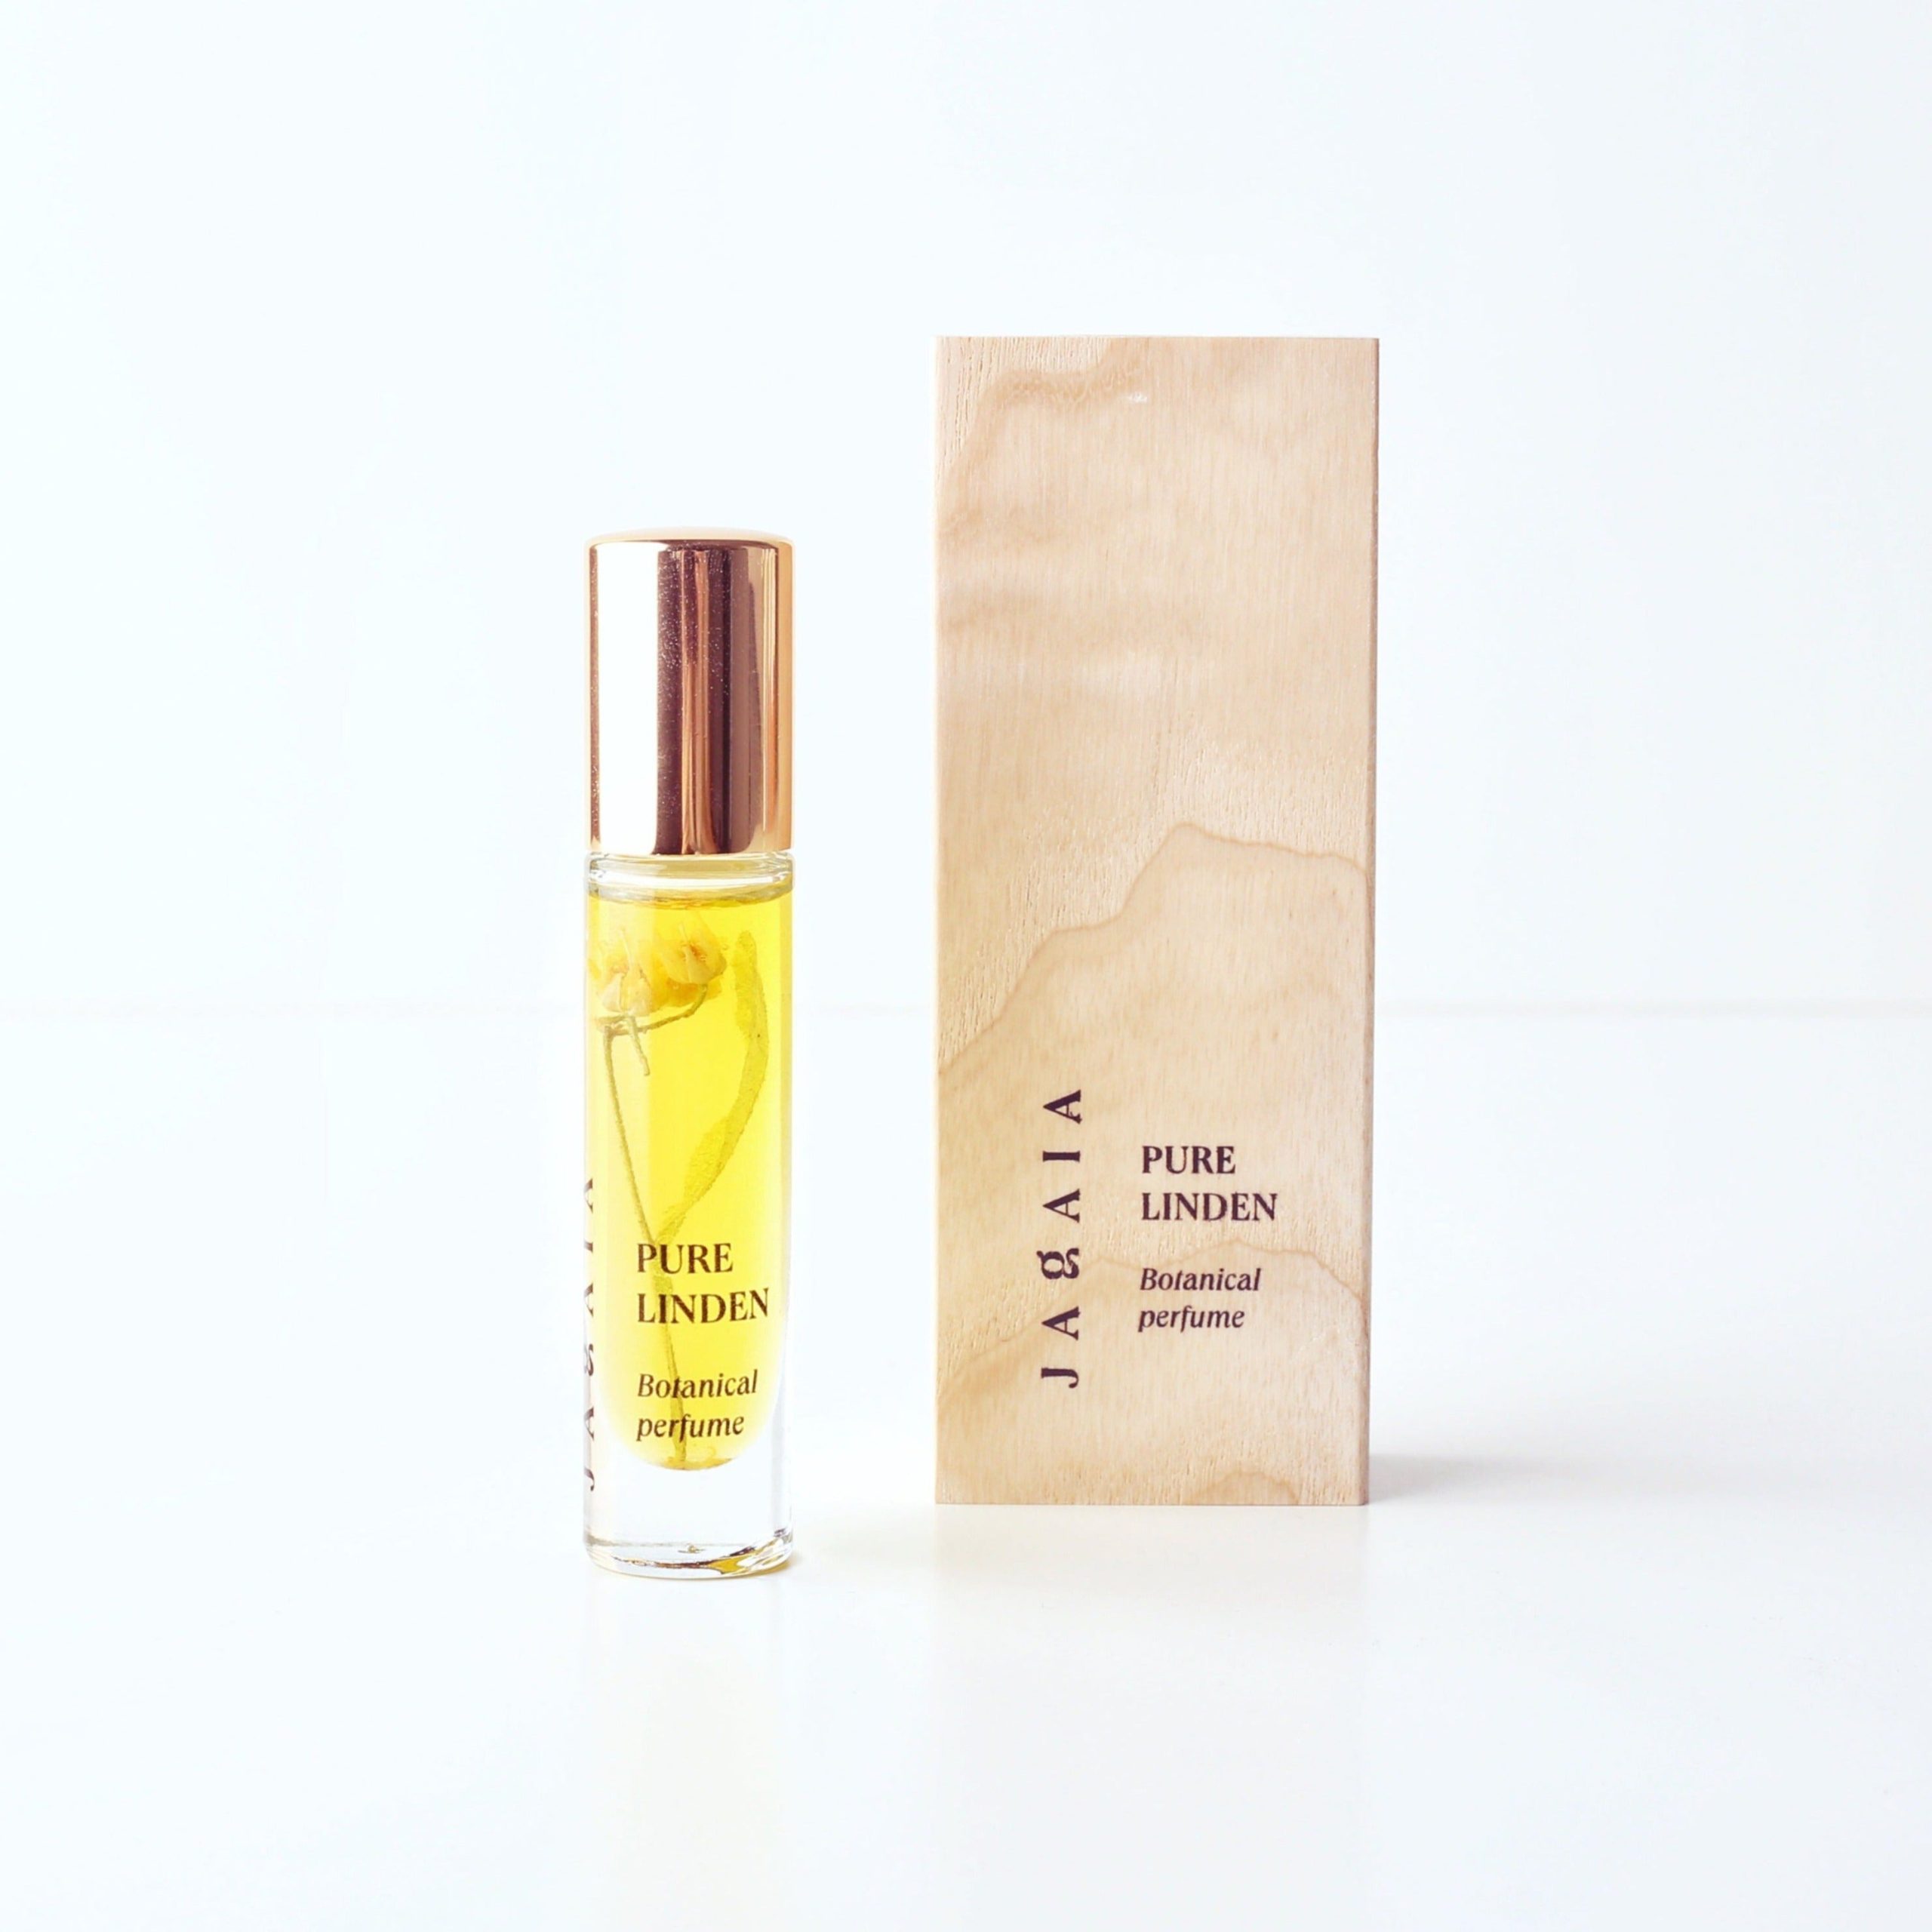 JAGAIA Botanický olejový roll-on parfém Pure Linden 0